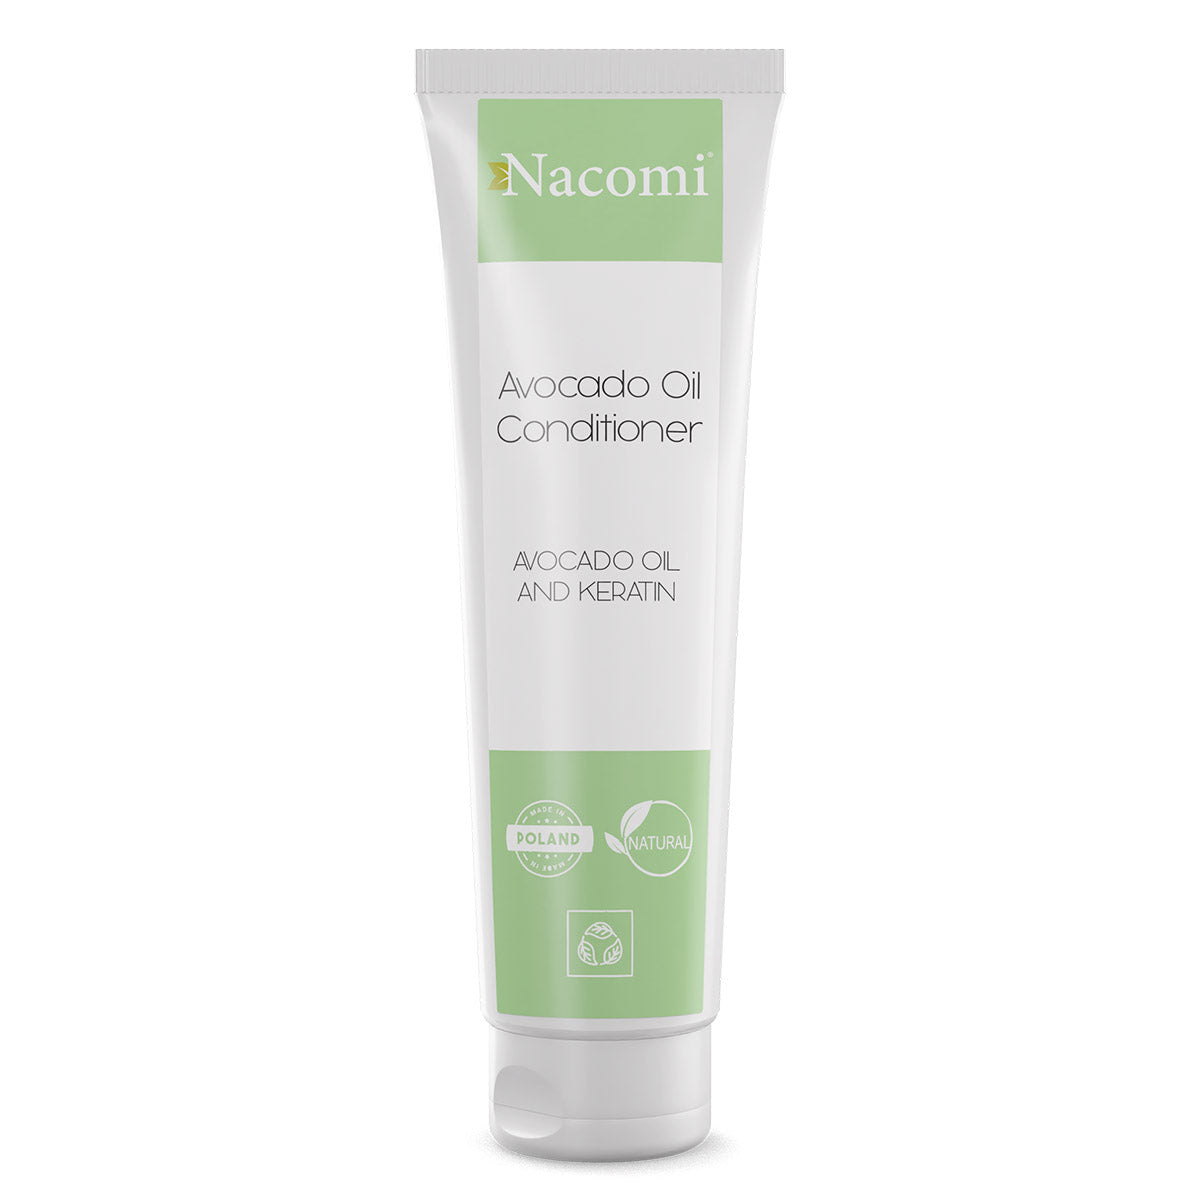 Nacomi Кондиционер для волос Avocado Oil с маслом авокадо и кератином 150мл цена и фото